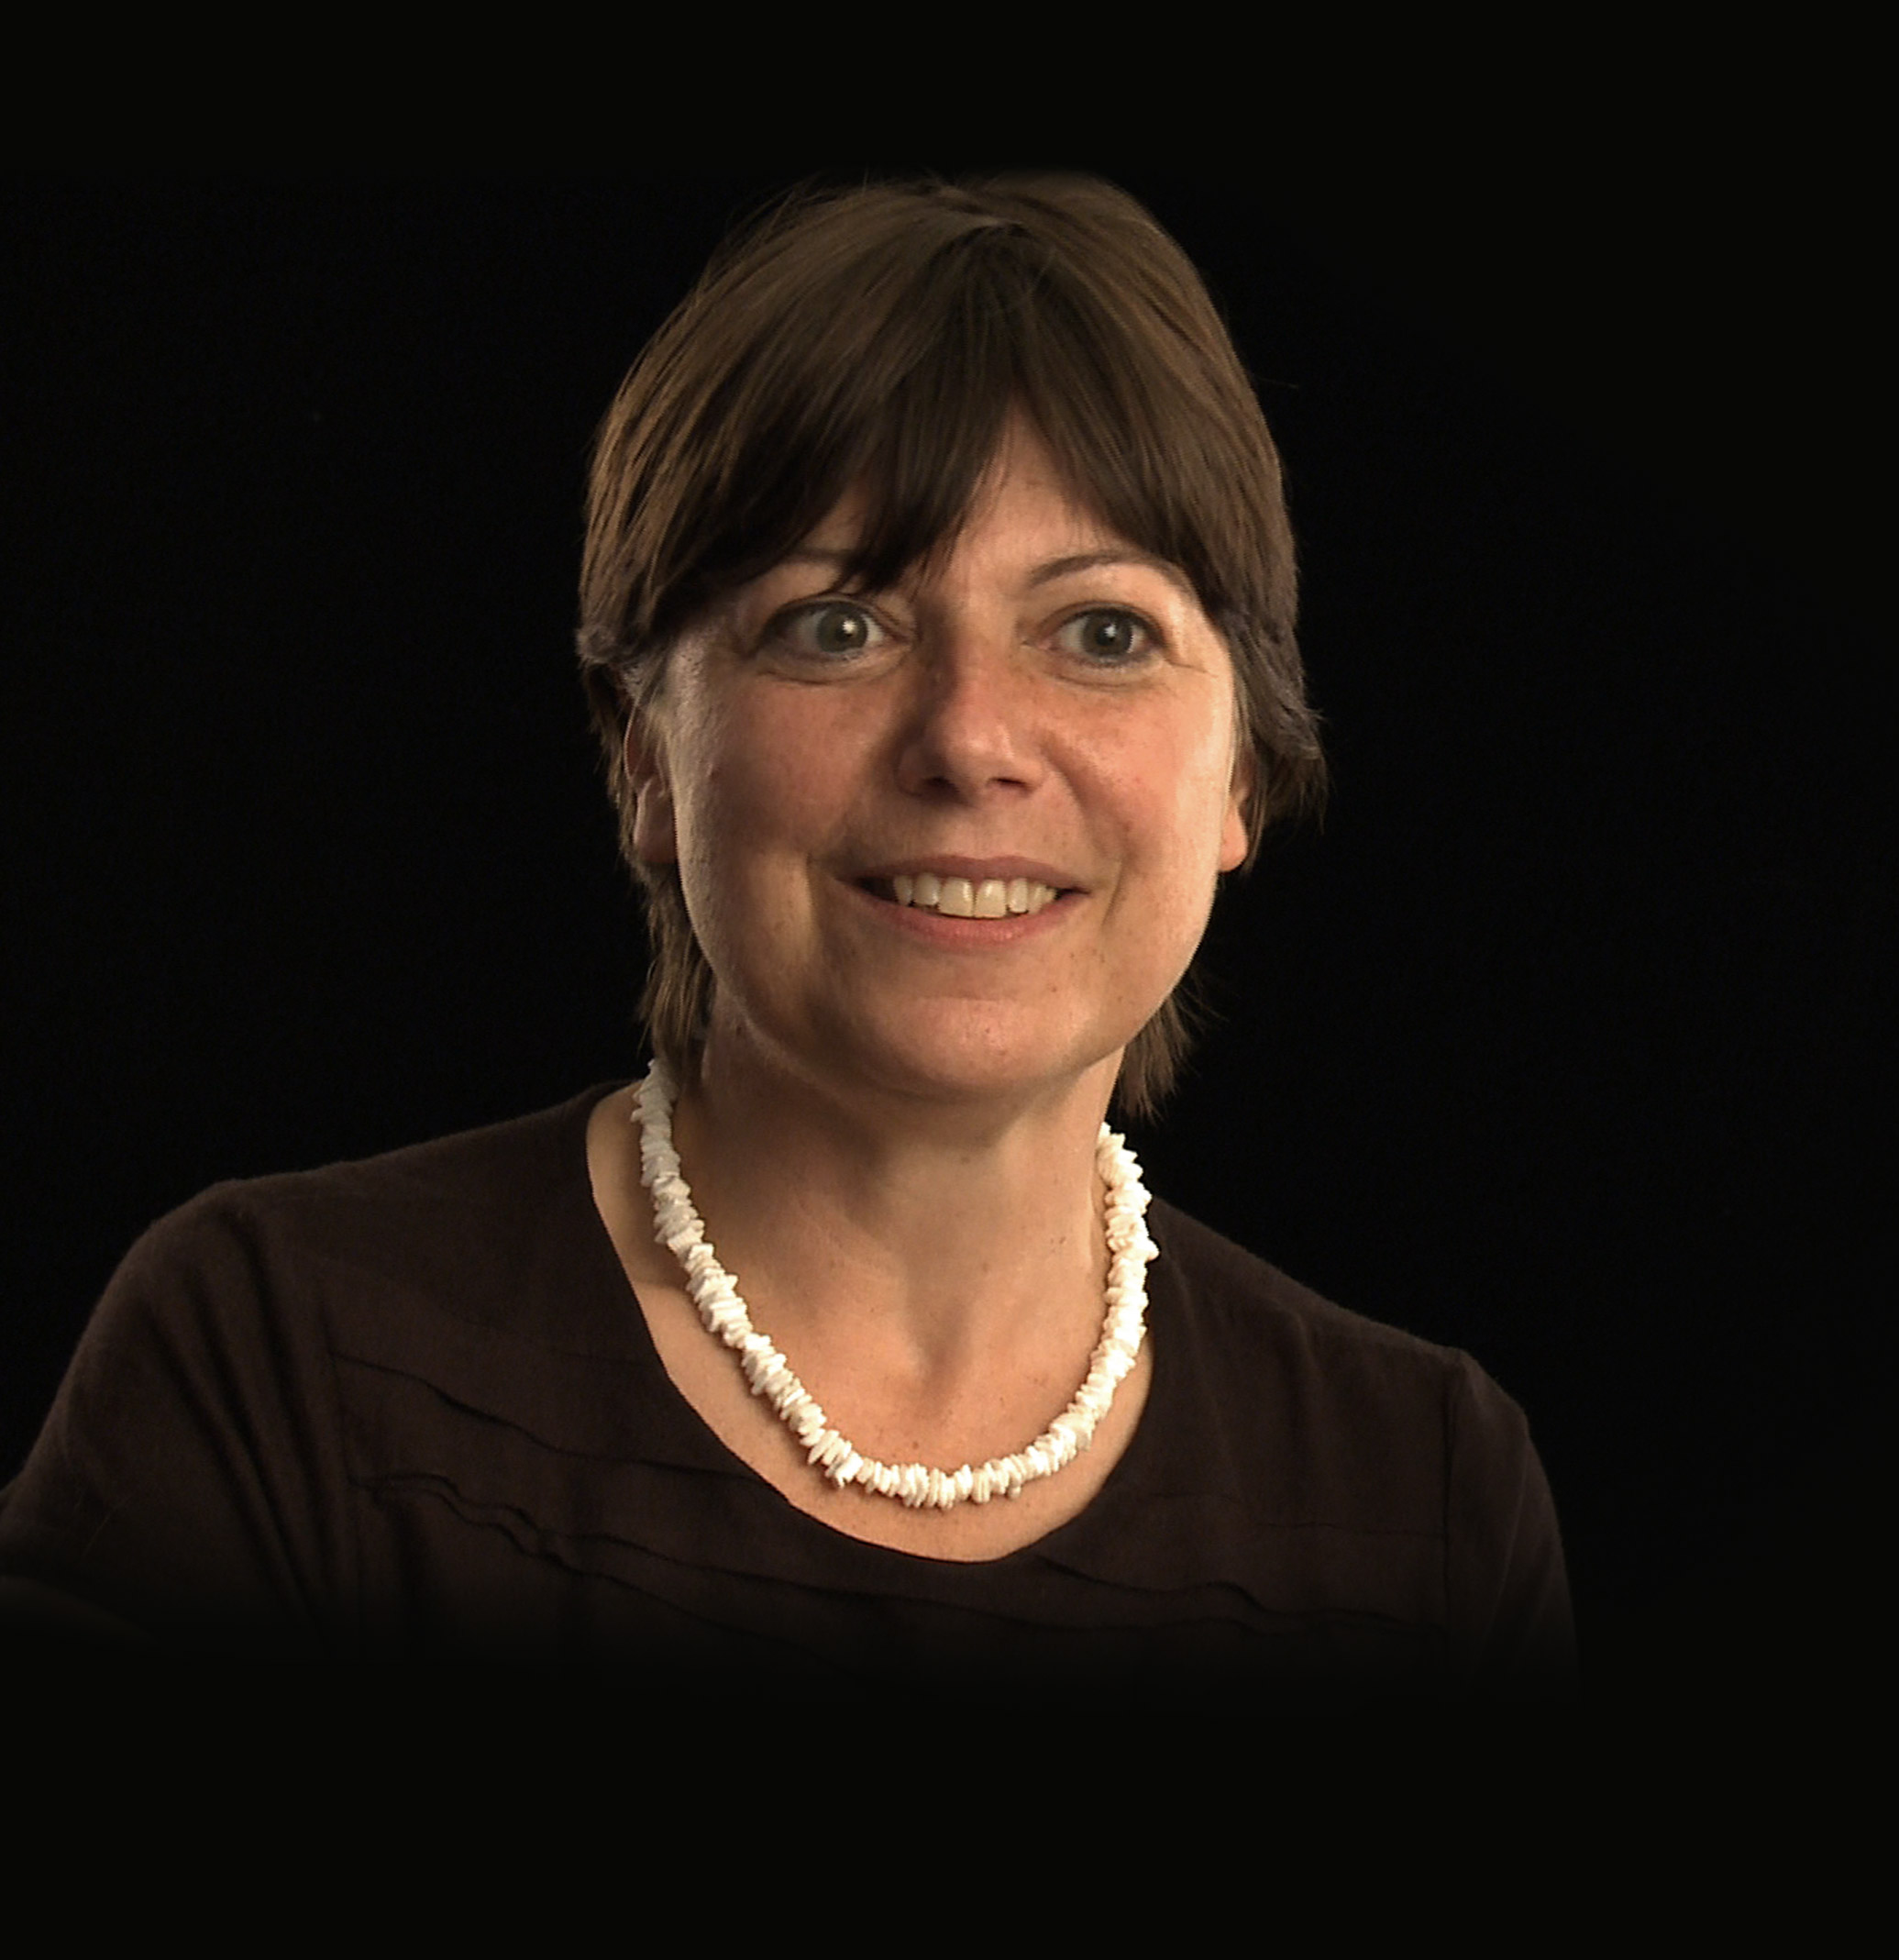 Clare Allen - Consultant Uroradiologist